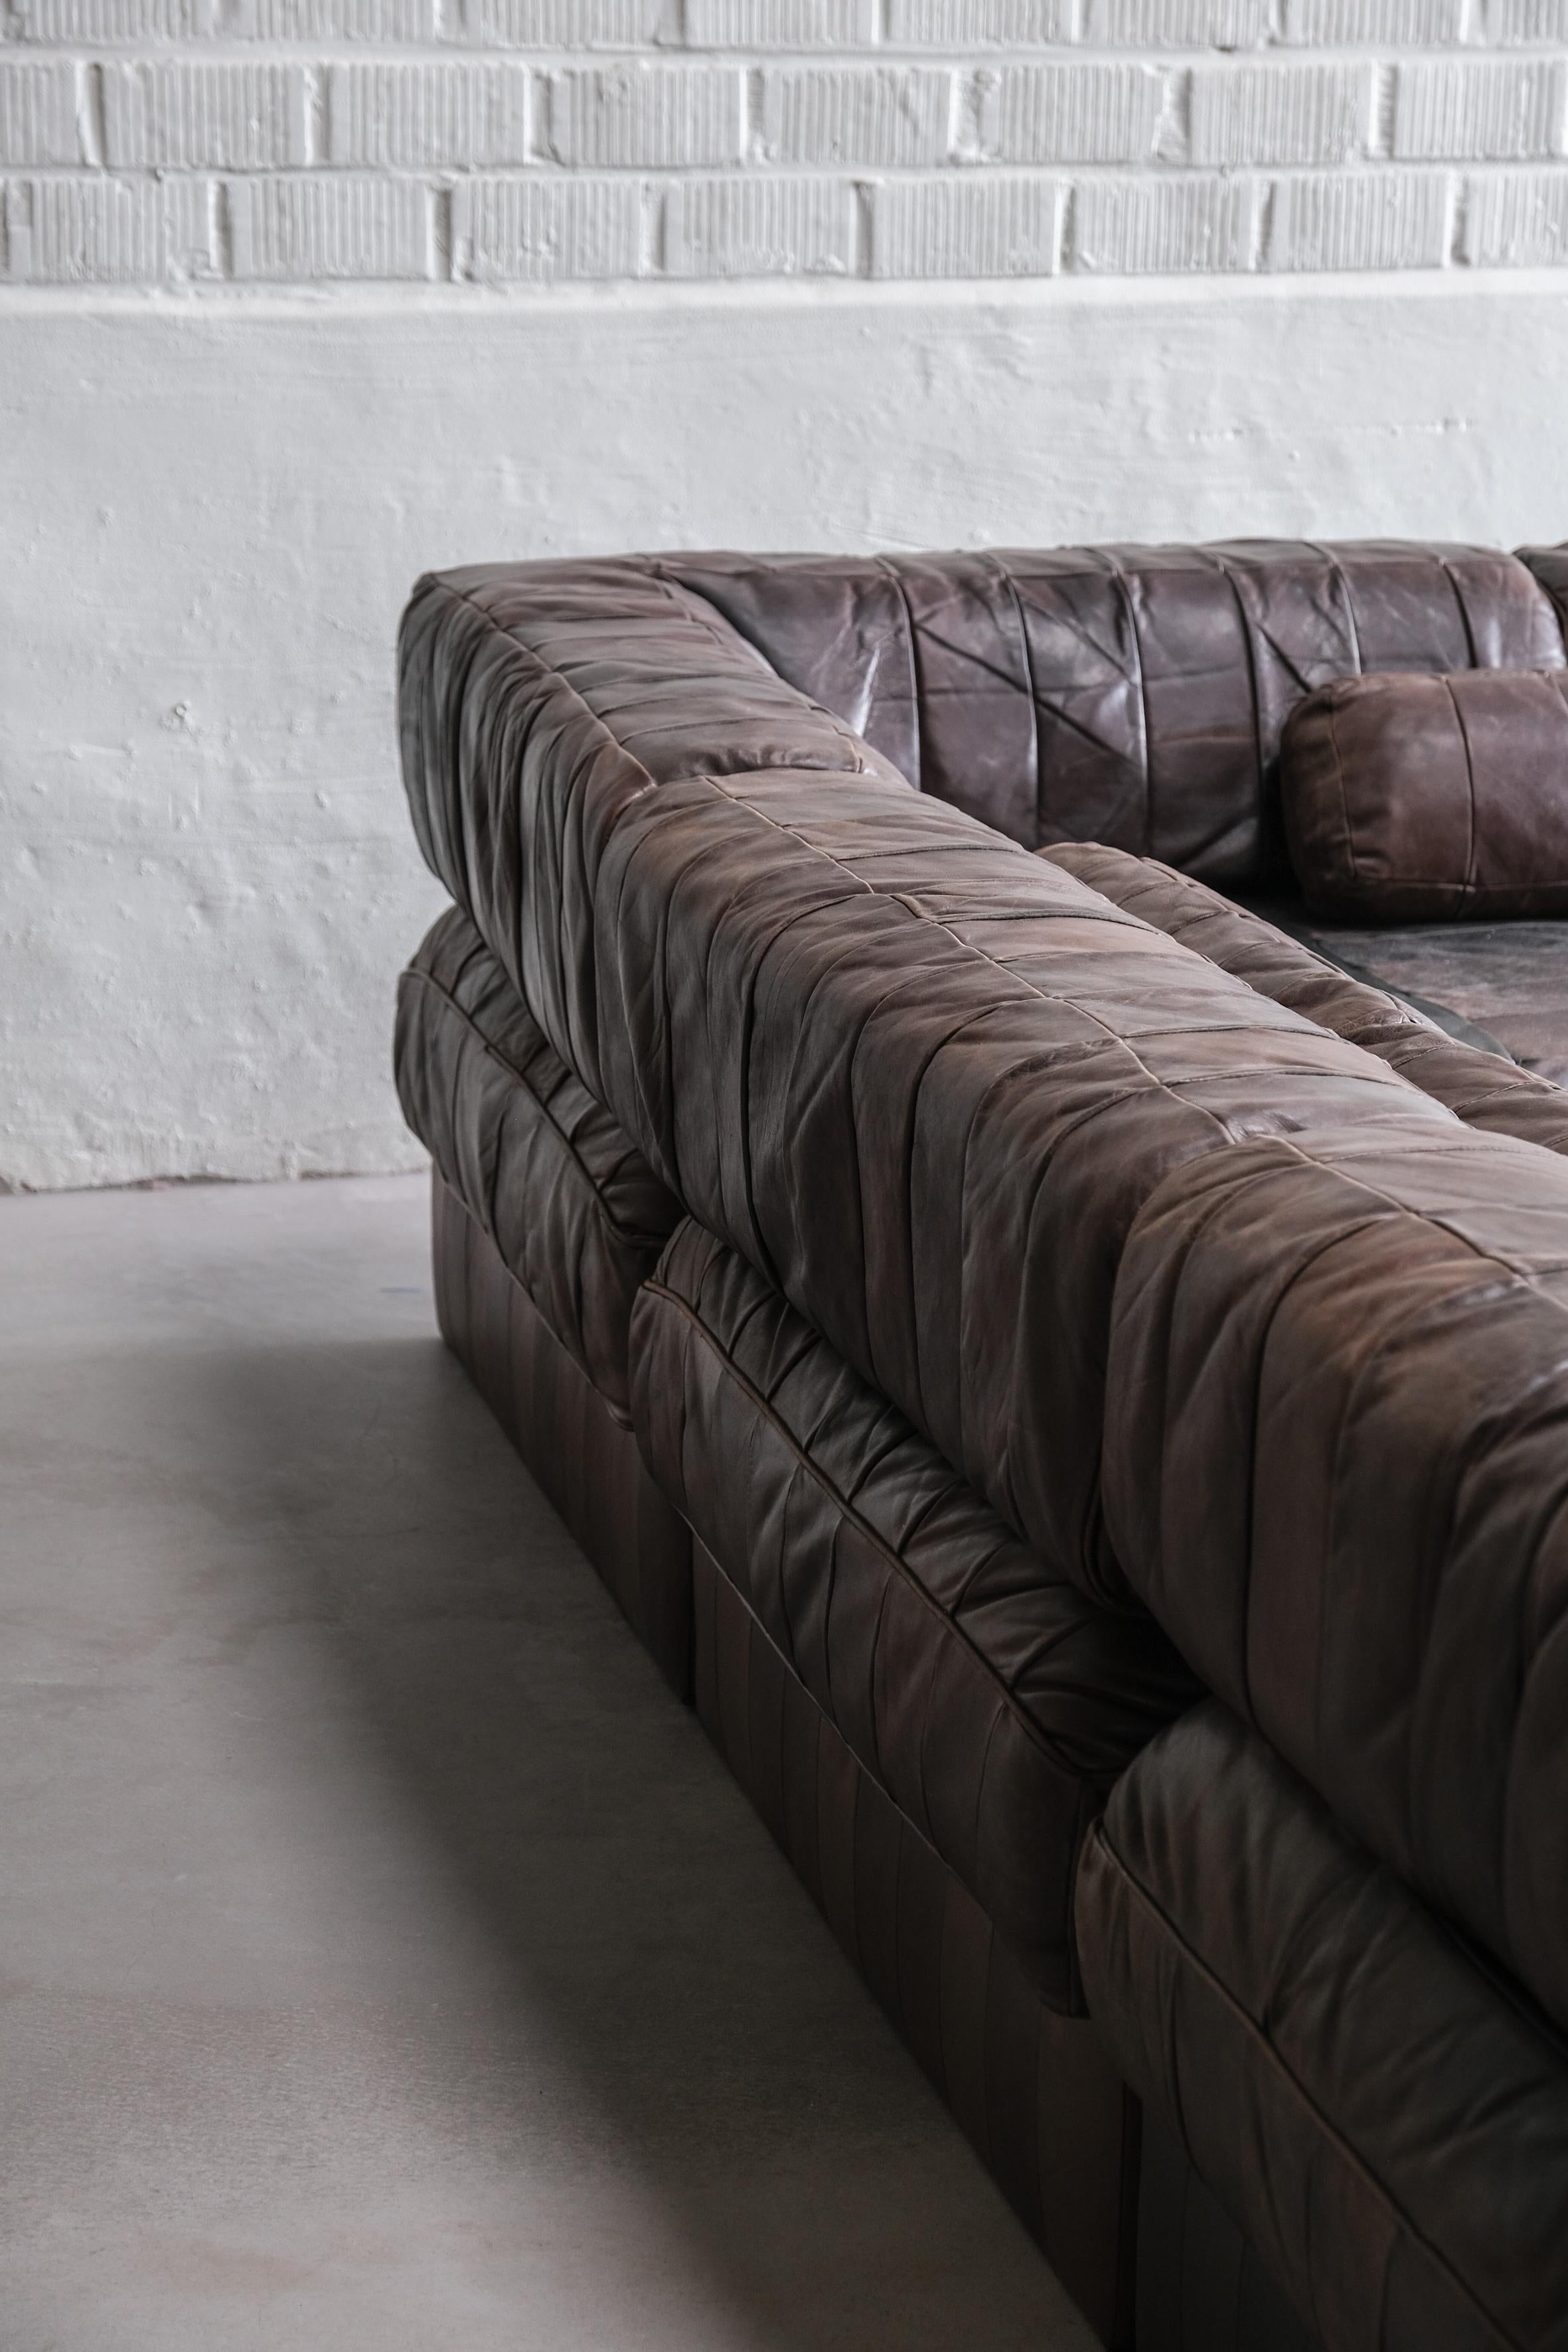 Sehr schönes schokoladenfarbenes modulares Sofa von De Sede 1970 Schweiz.
5 modulare Teile mit 4 Rückenlehnenplatten, kann als Sofa oder als Einzelteile aufgestellt werden. 

